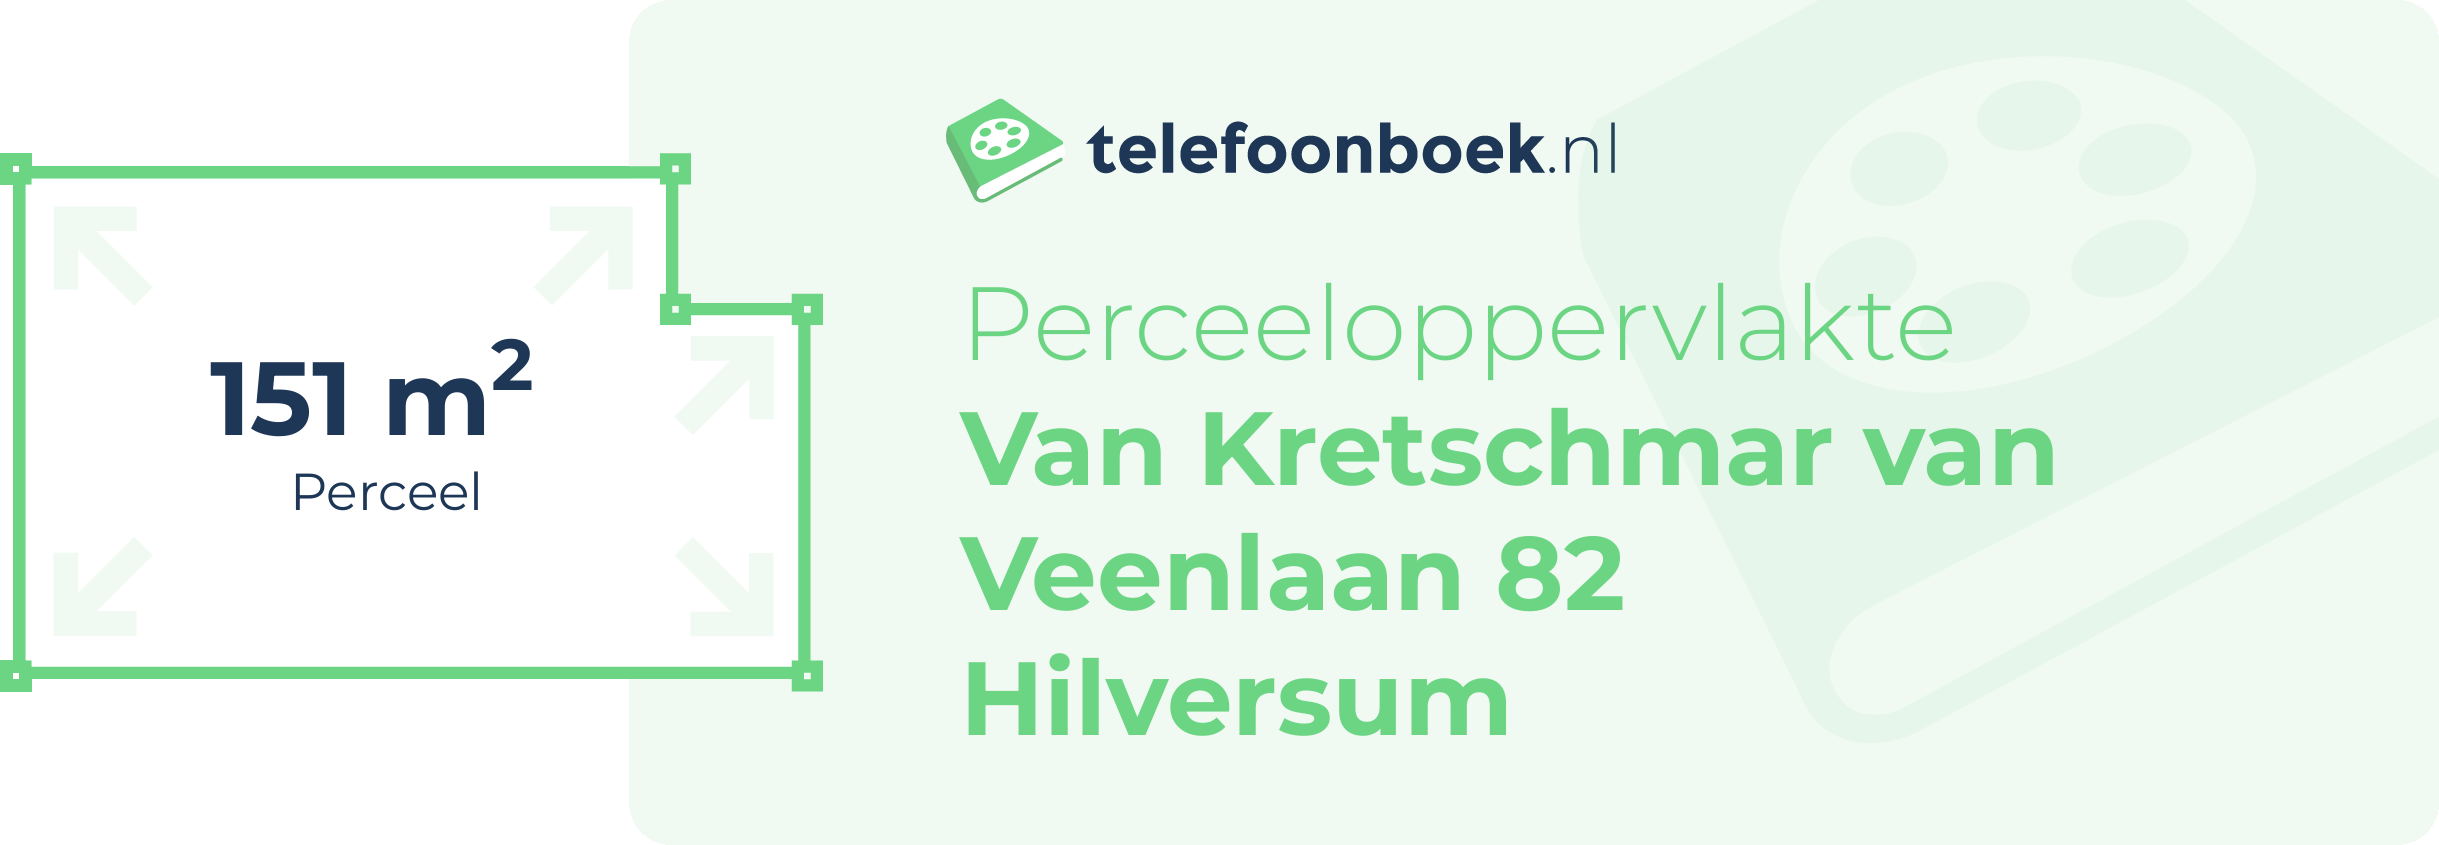 Perceeloppervlakte Van Kretschmar Van Veenlaan 82 Hilversum